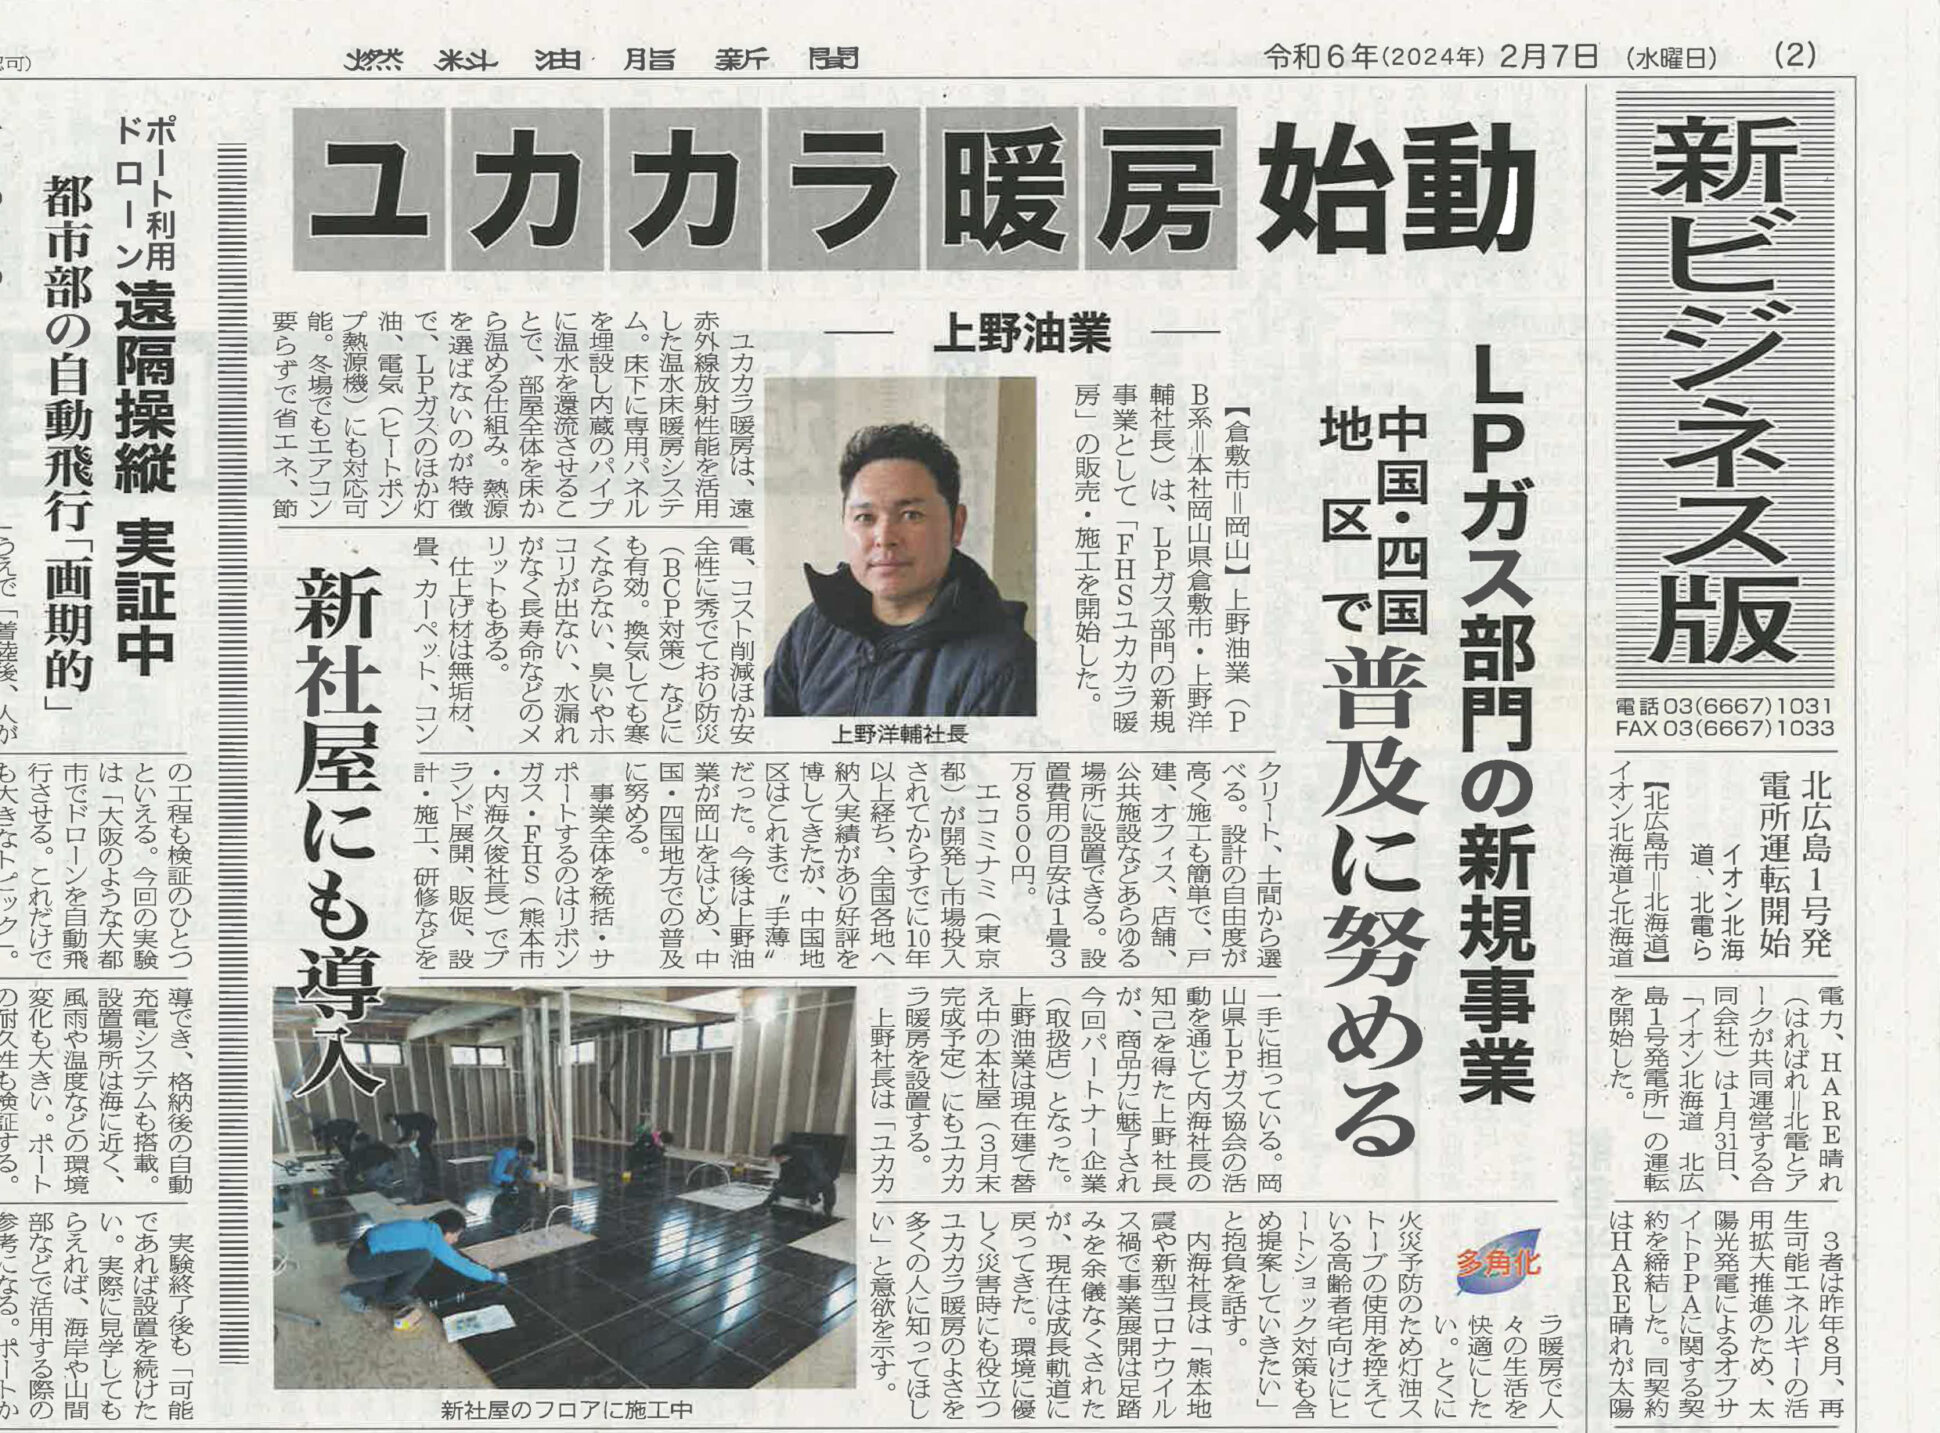 燃料油脂新聞に上野油業様の記事が掲載されました